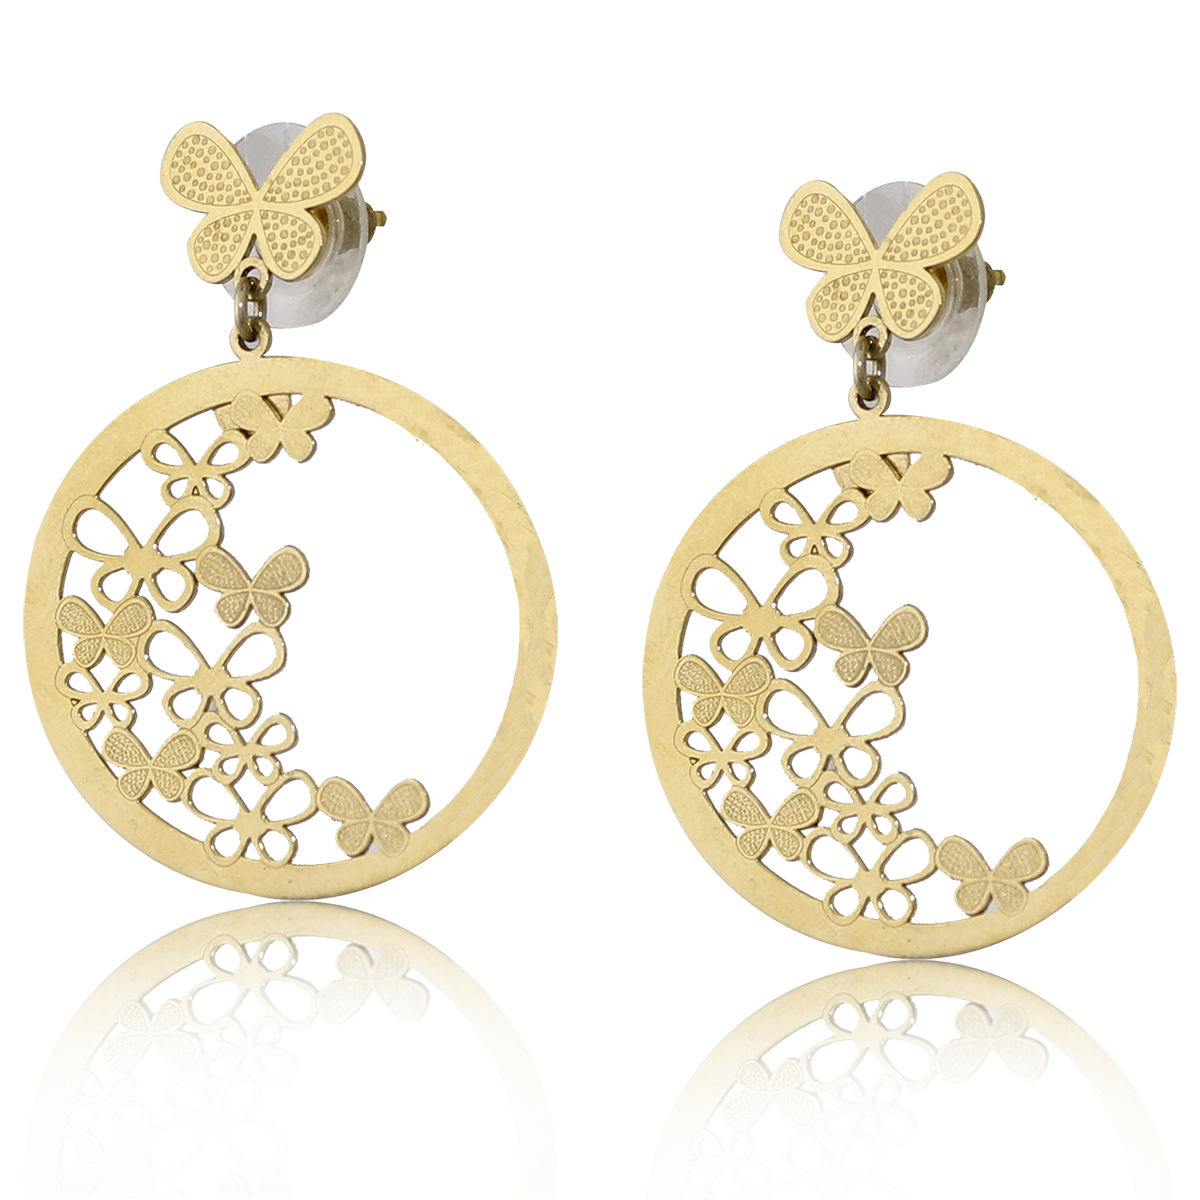 Broquel Arete Oro 18K Laminado#58  en forma de circulo con flores dimensión 3 cm. de largo y 3 cm de ancho.